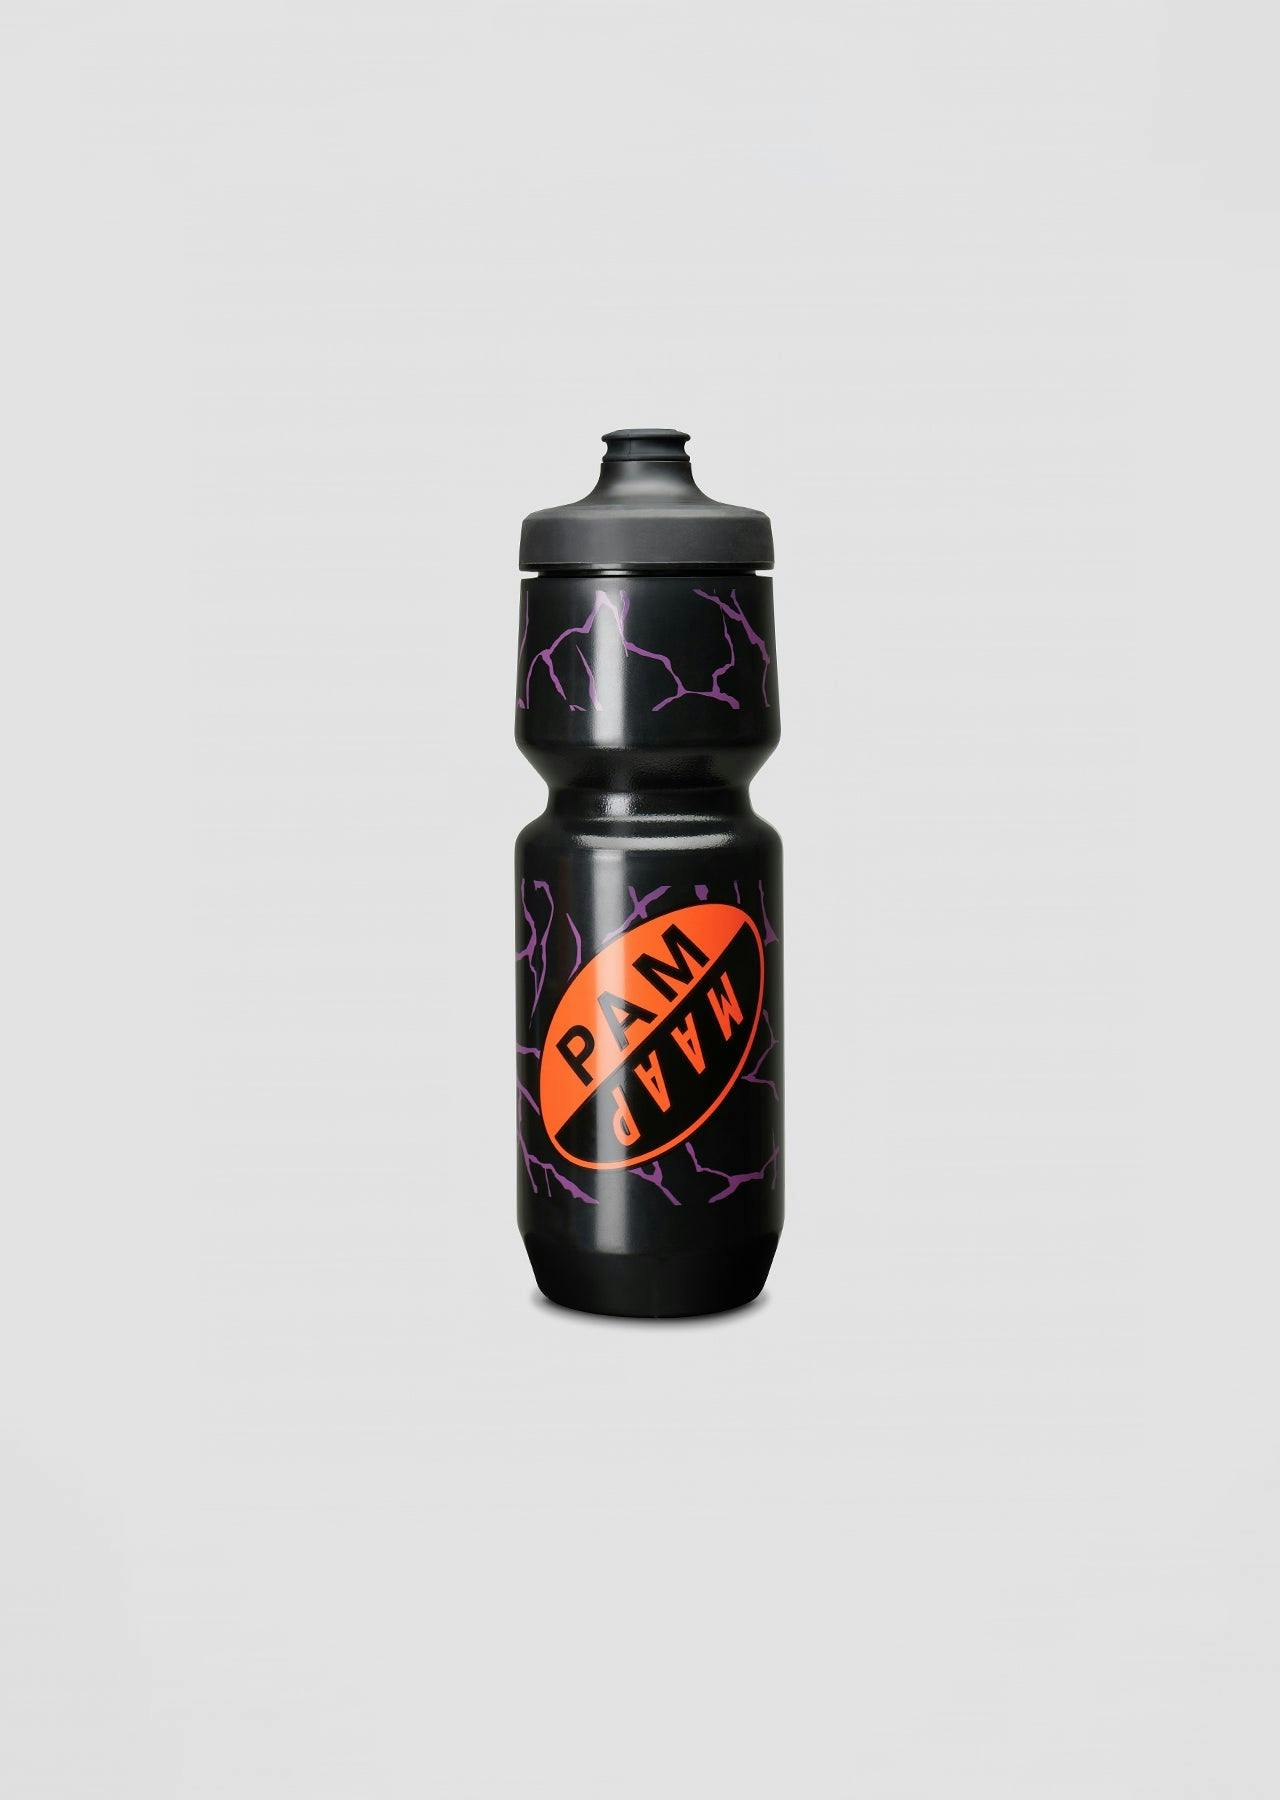 MAAP X PAM Water Bottle - Large